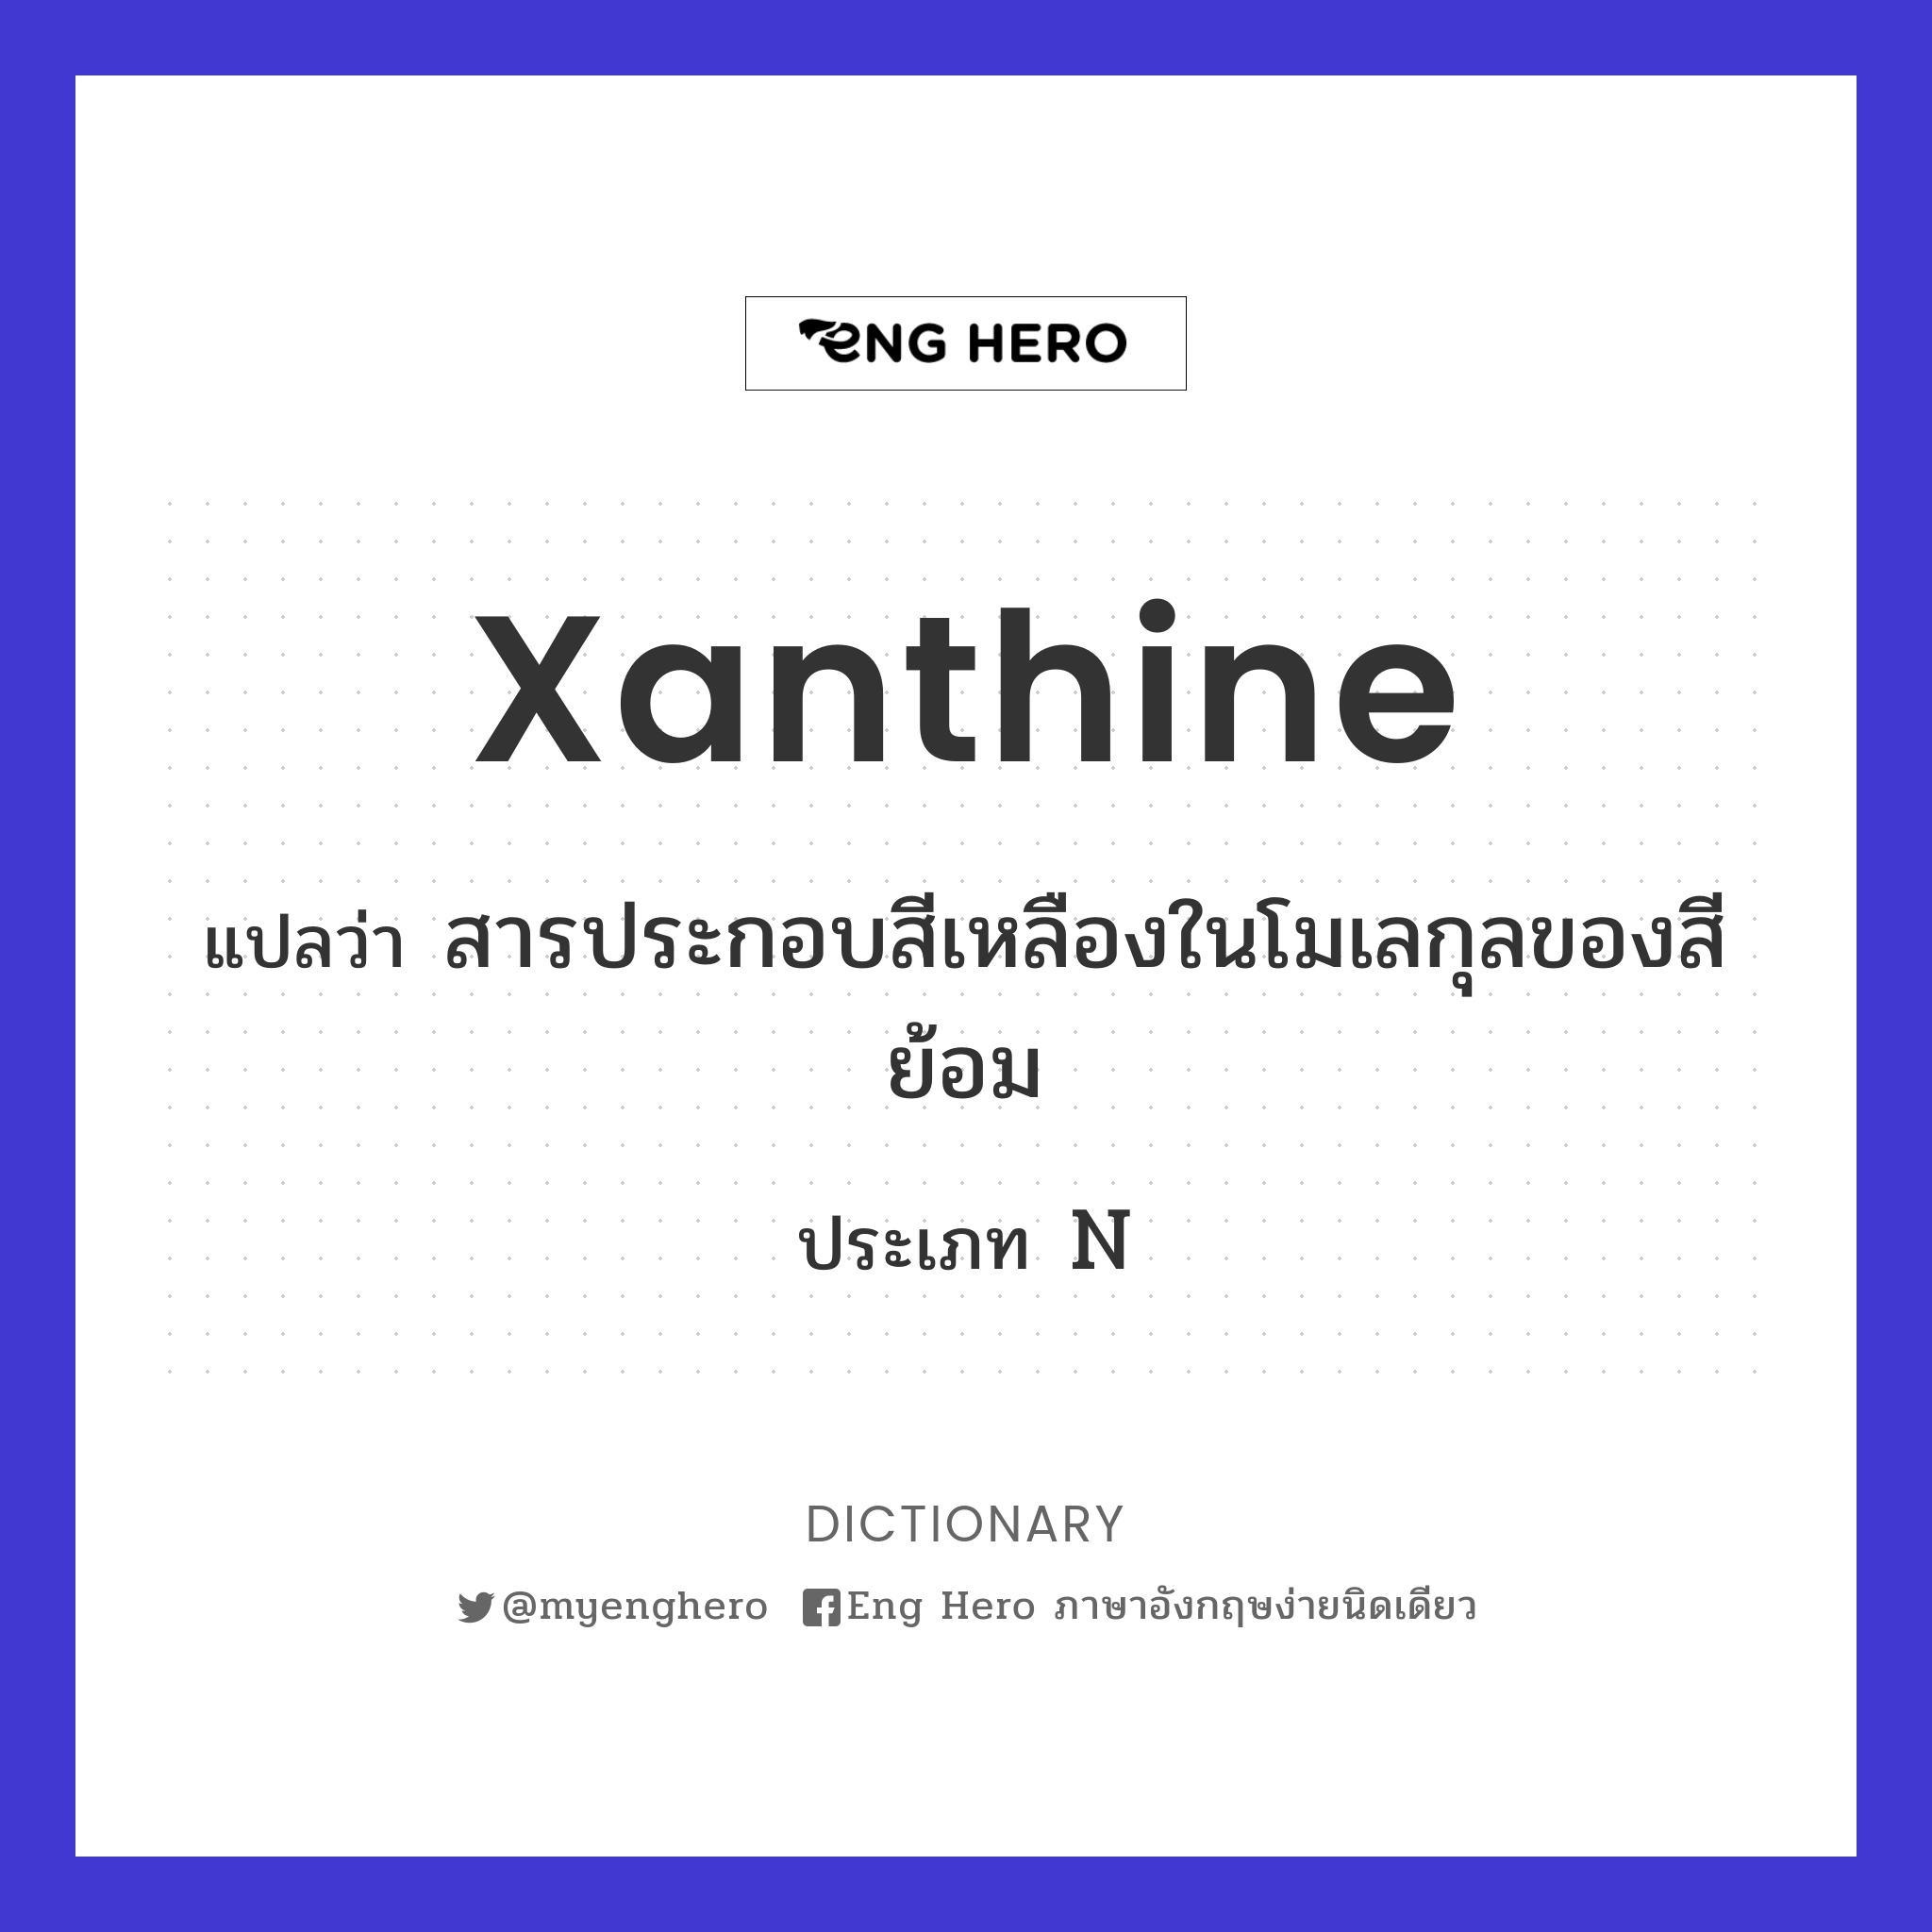 xanthine